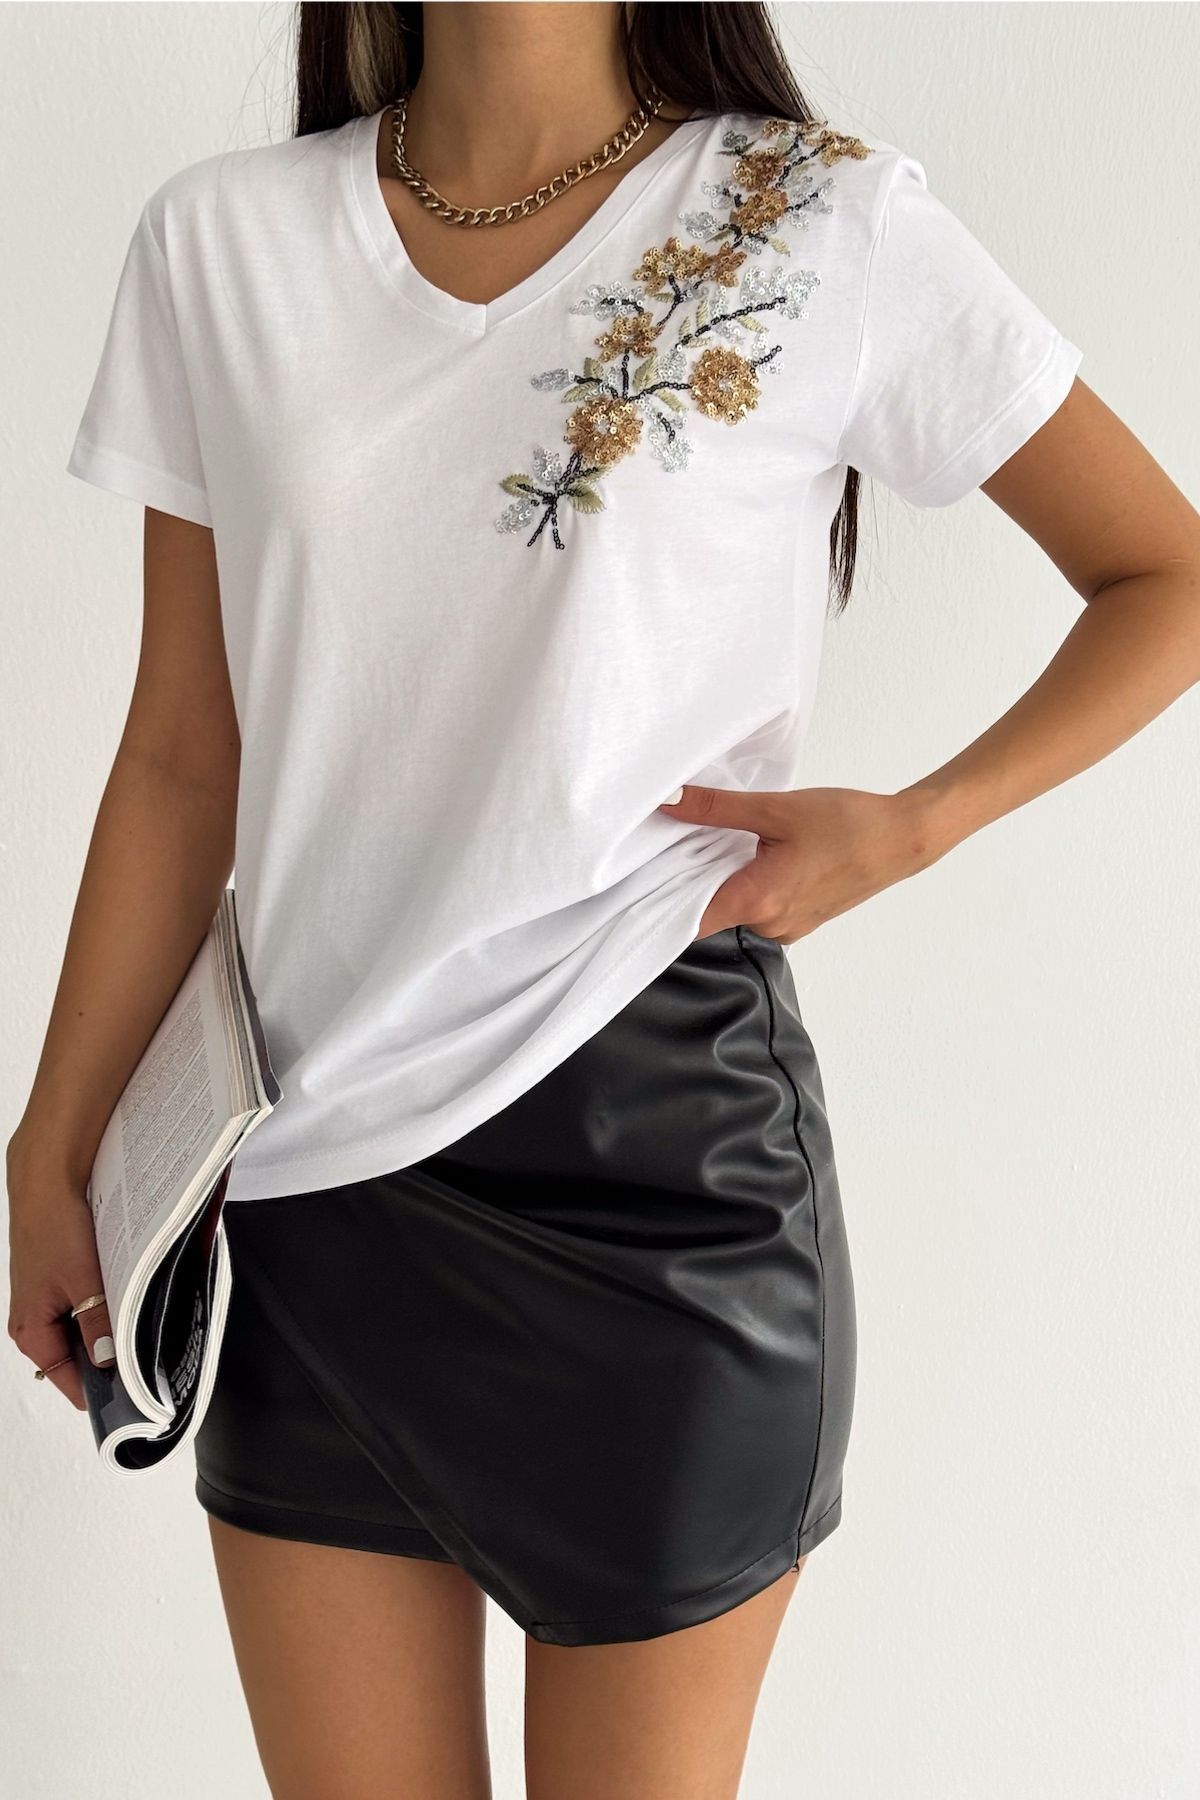 FEMELLE Kadın Beyaz V Yaka Omzu Çiçek Pul Payet İşlemeli Püsküllü %100 Pamuk Tişört